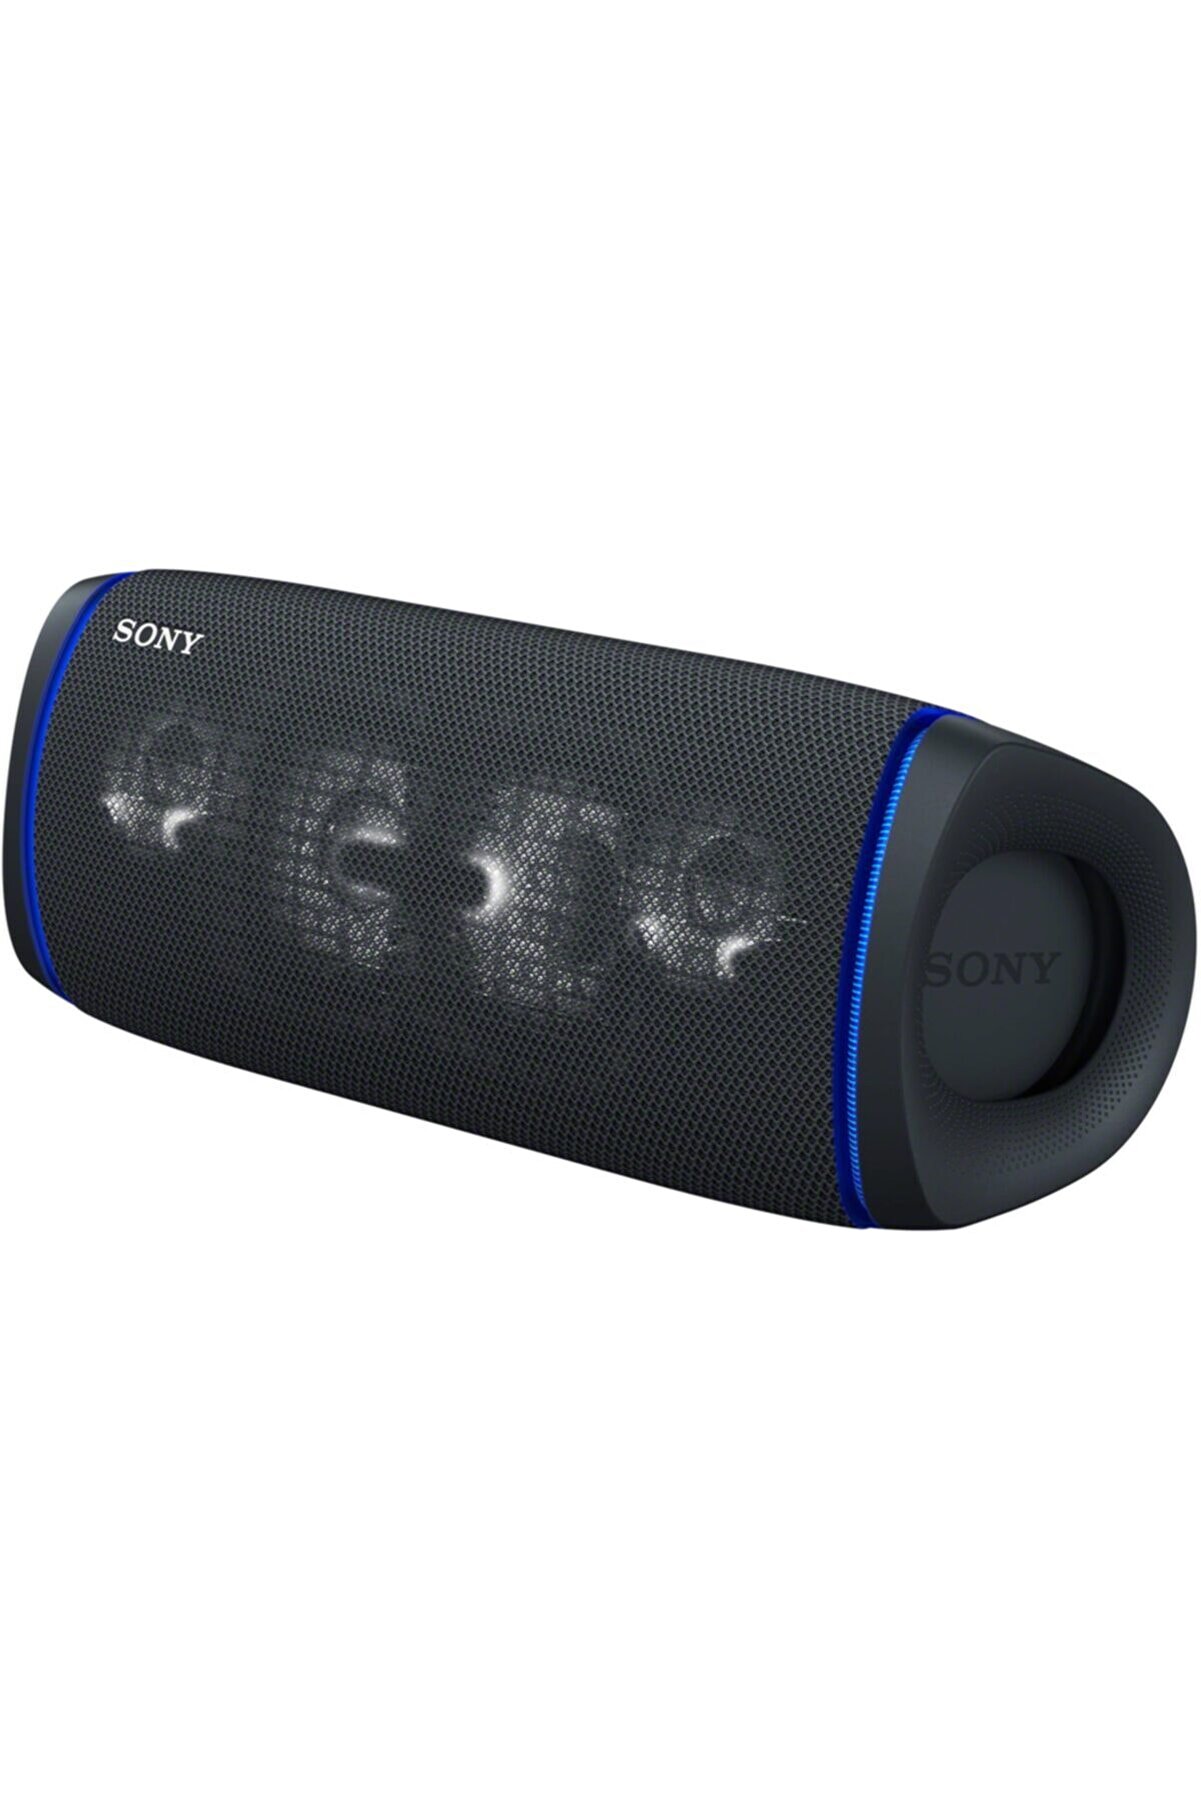 Sony SRSXB43B Extrabass Taşınabilir Bluetooth Hoparlör Siyah